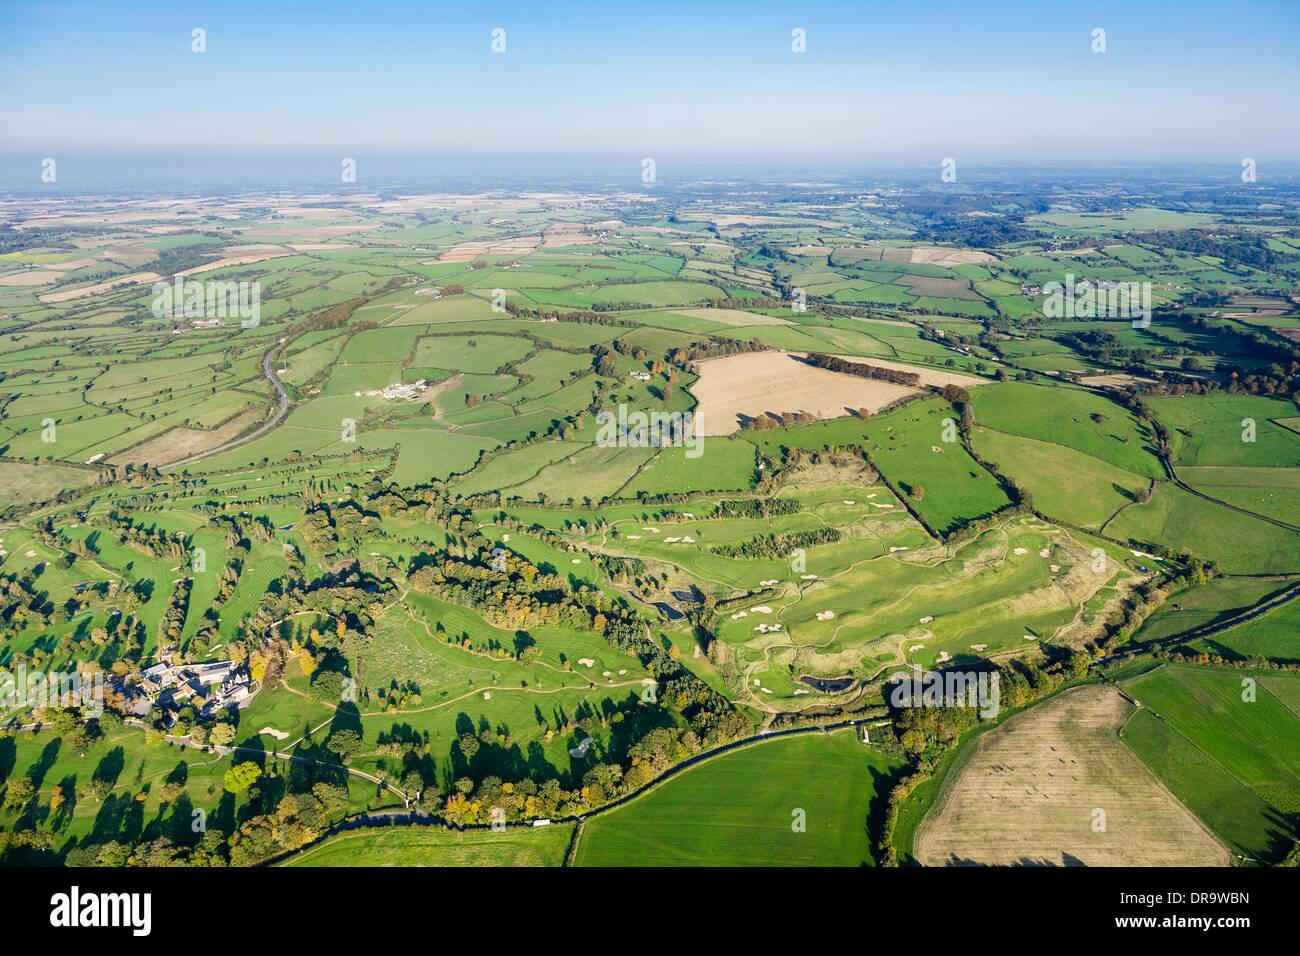 Luftaufnahme der schönen grünen Landschaft in Somerset, Großbritannien. Enthält wogenden Feldern, Farmen, Bäume und einen Golfplatz. Stockfoto